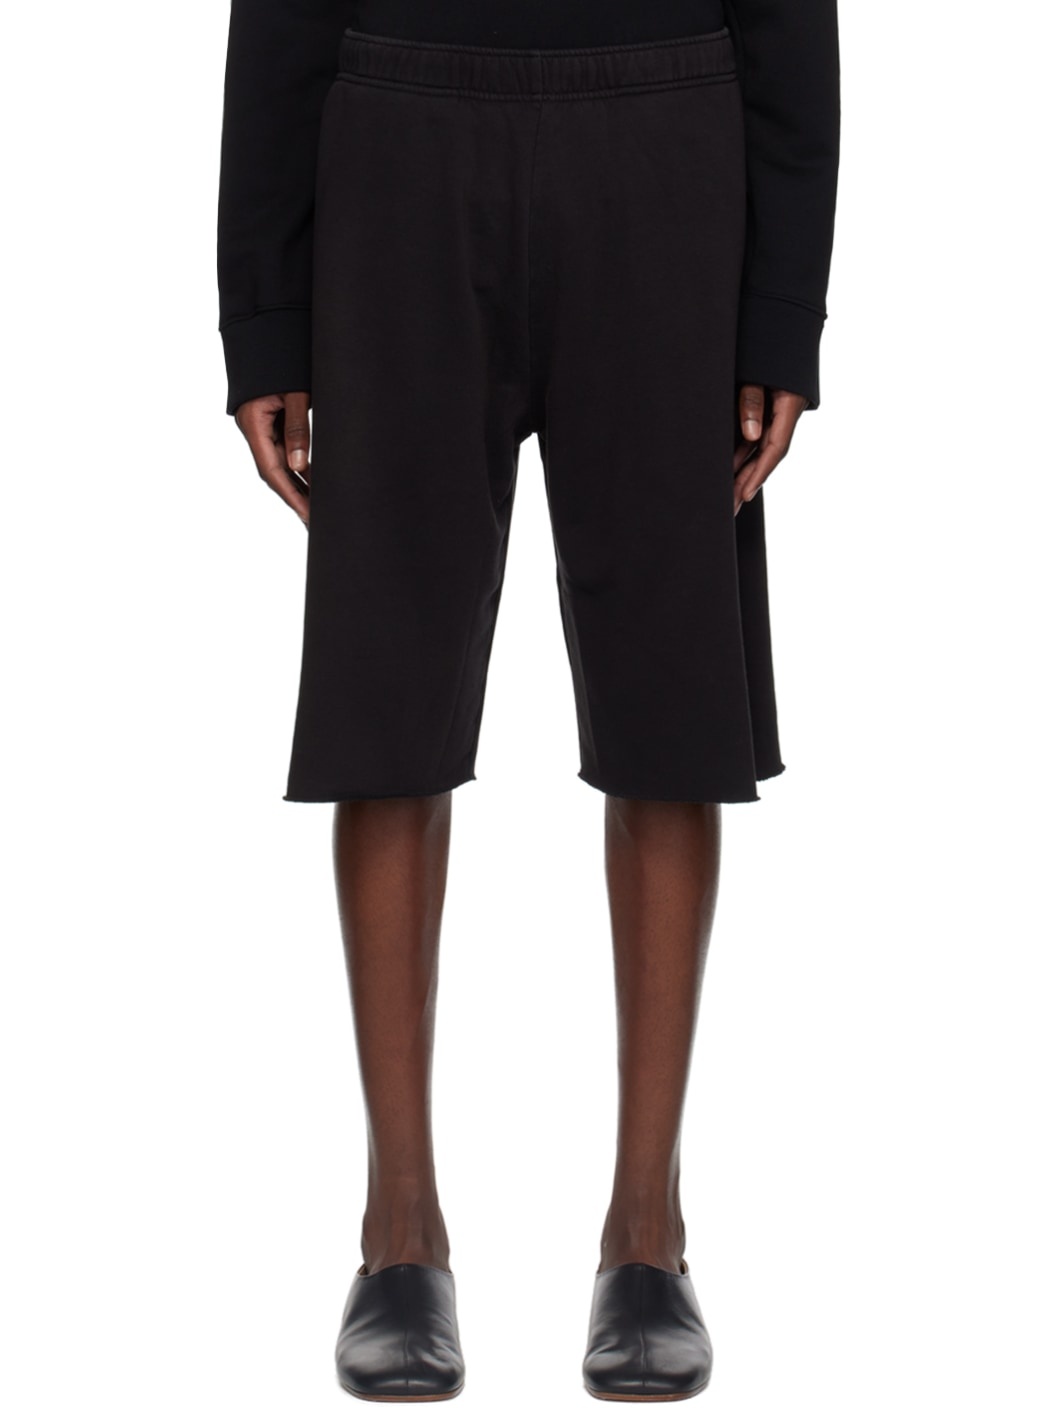 Black Elasticized Shorts - 1